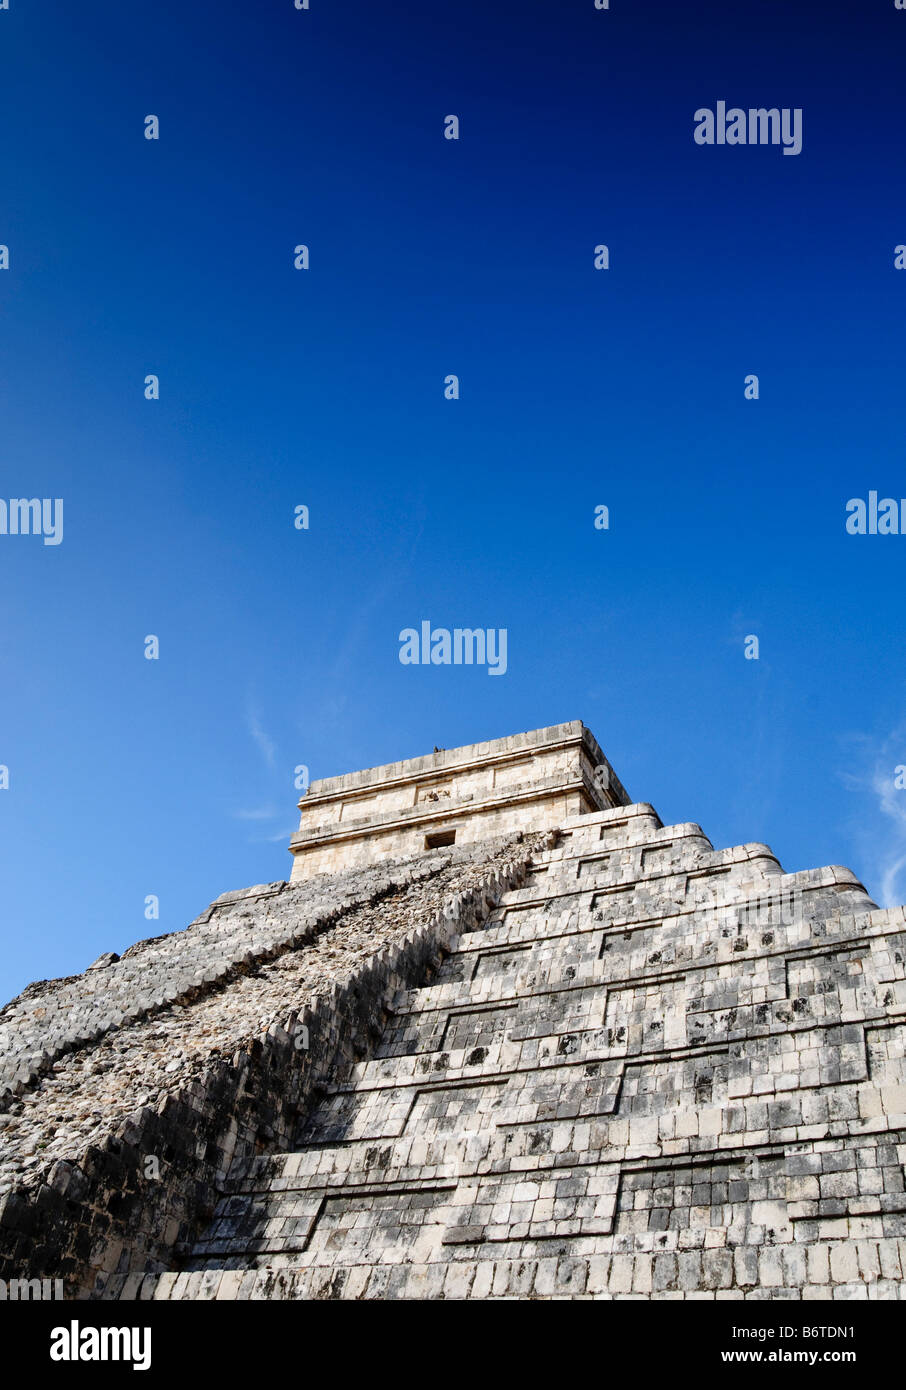 CHICHEN ITZA, Mexique - El Castillo (également connu sous le nom de Temple de Kuklcan) aux ruines mayas anciennes de Chichen Itza, Yucatan, Mexique 081216103554 4555.NEF. Chichen Itza, situé sur la péninsule du Yucatan au Mexique, est un site archéologique important présentant la riche histoire et les connaissances scientifiques avancées de la civilisation maya antique. Il est plus connu pour la Pyramide Kukulkan, ou « El Castillo », une structure à quatre côtés avec 91 marches de chaque côté, culminant en une seule étape au sommet pour représenter les 365 jours de l'année solaire. Banque D'Images